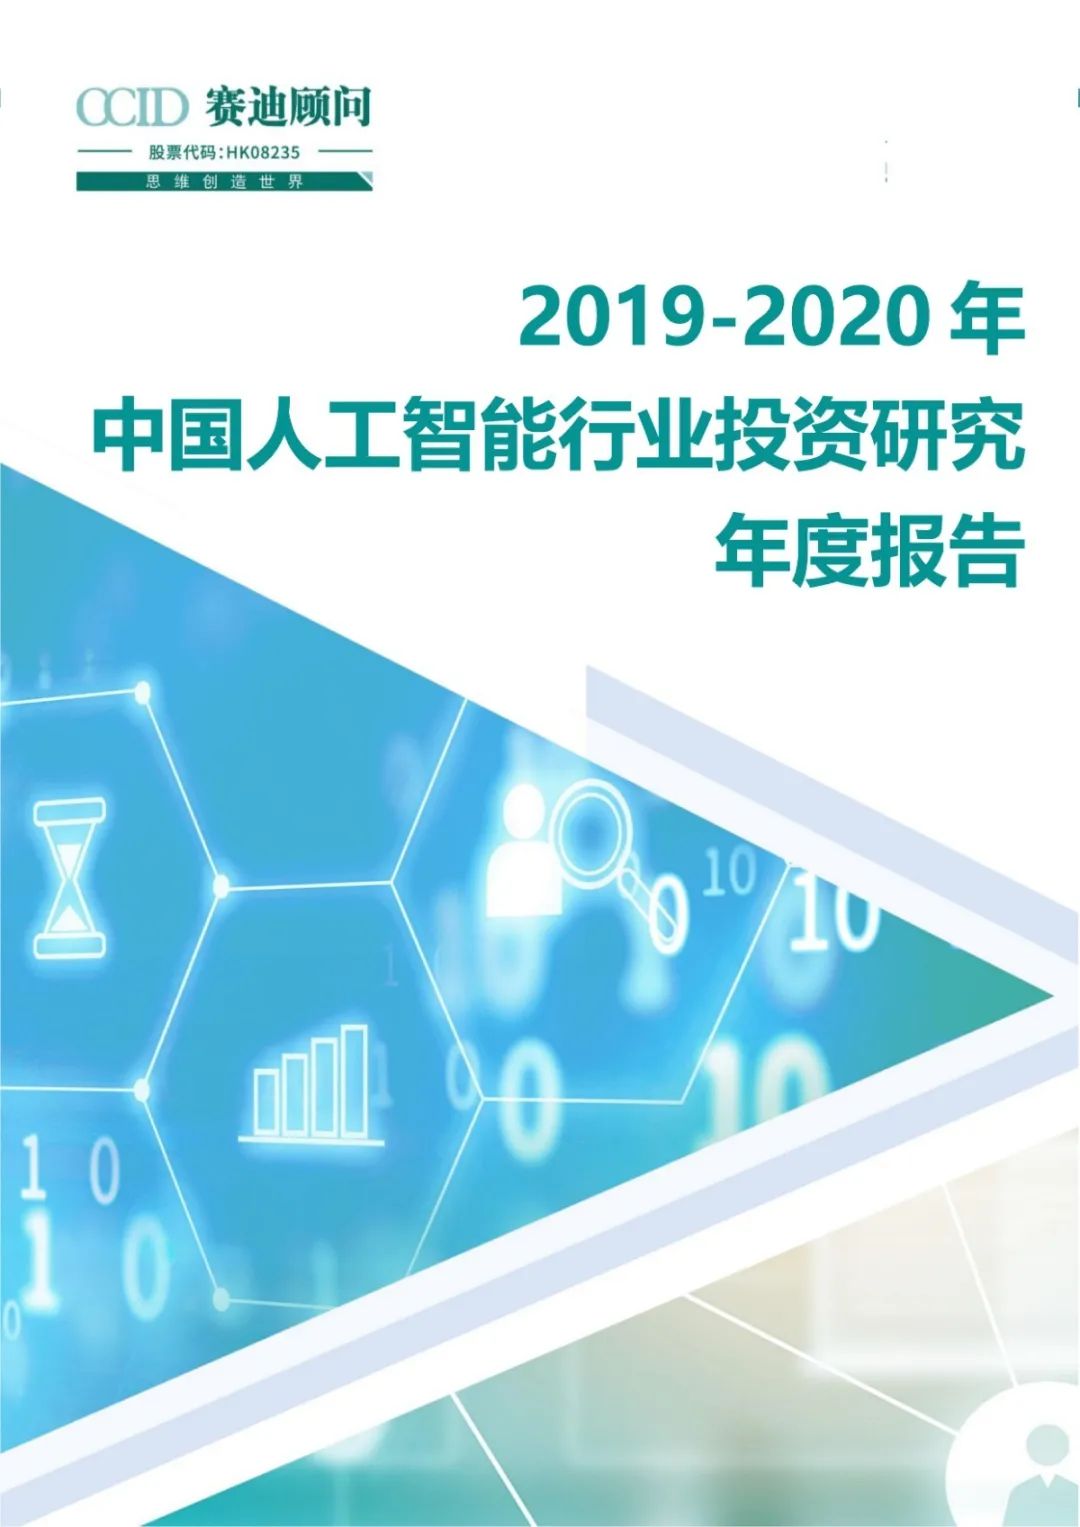 中国人工智能产业2019-2020年投资研究年度报告|